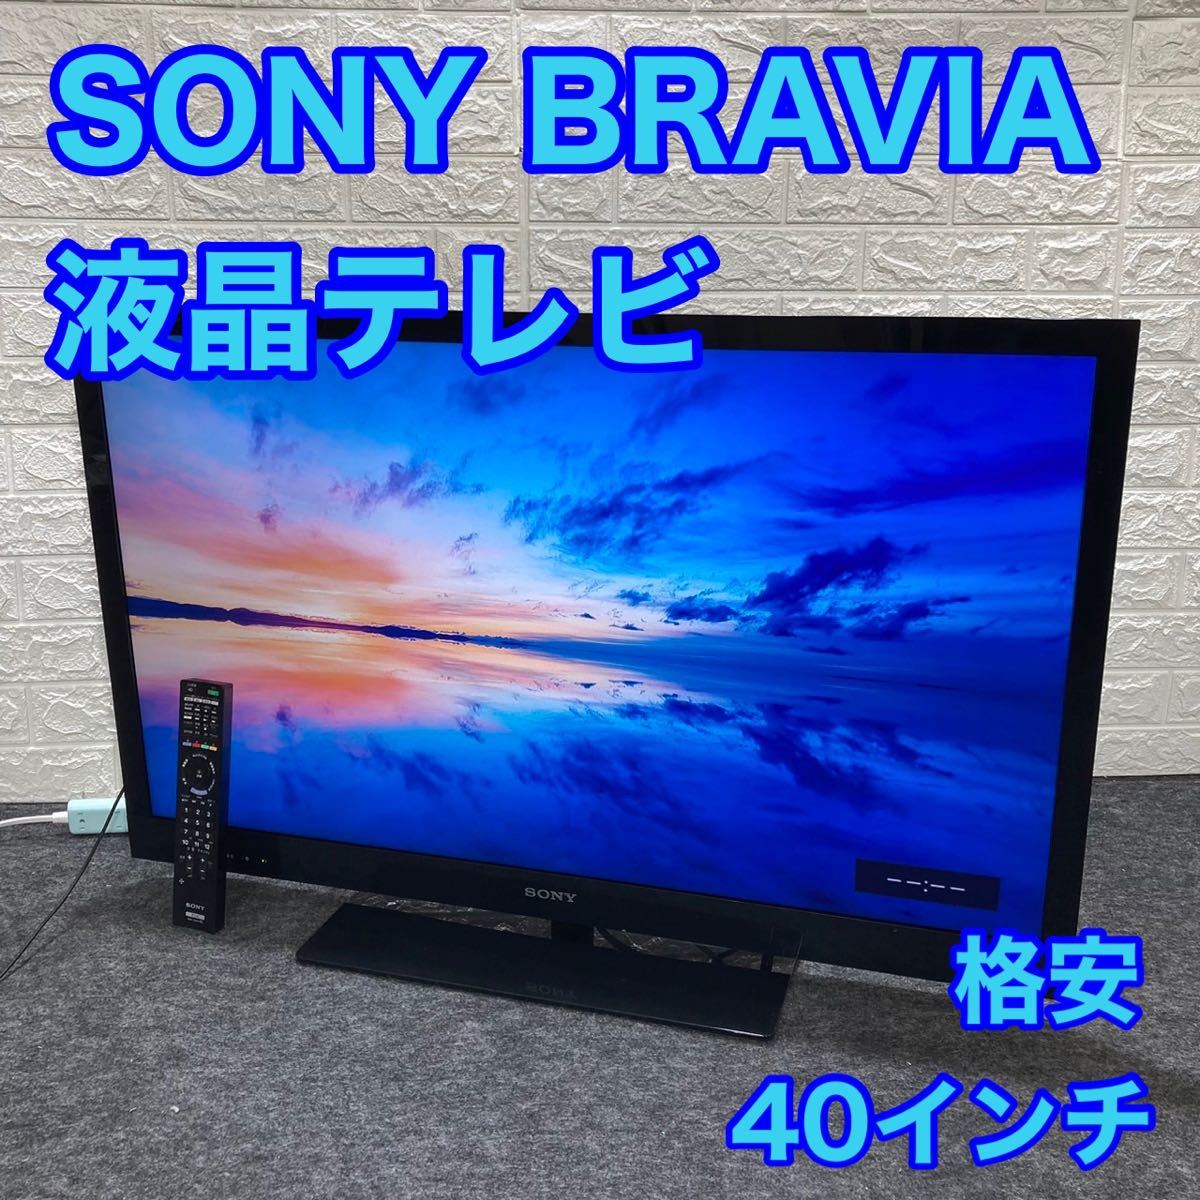 ヤフオク! -「sony bravia 40」(家電、AV、カメラ) の落札相場・落札価格